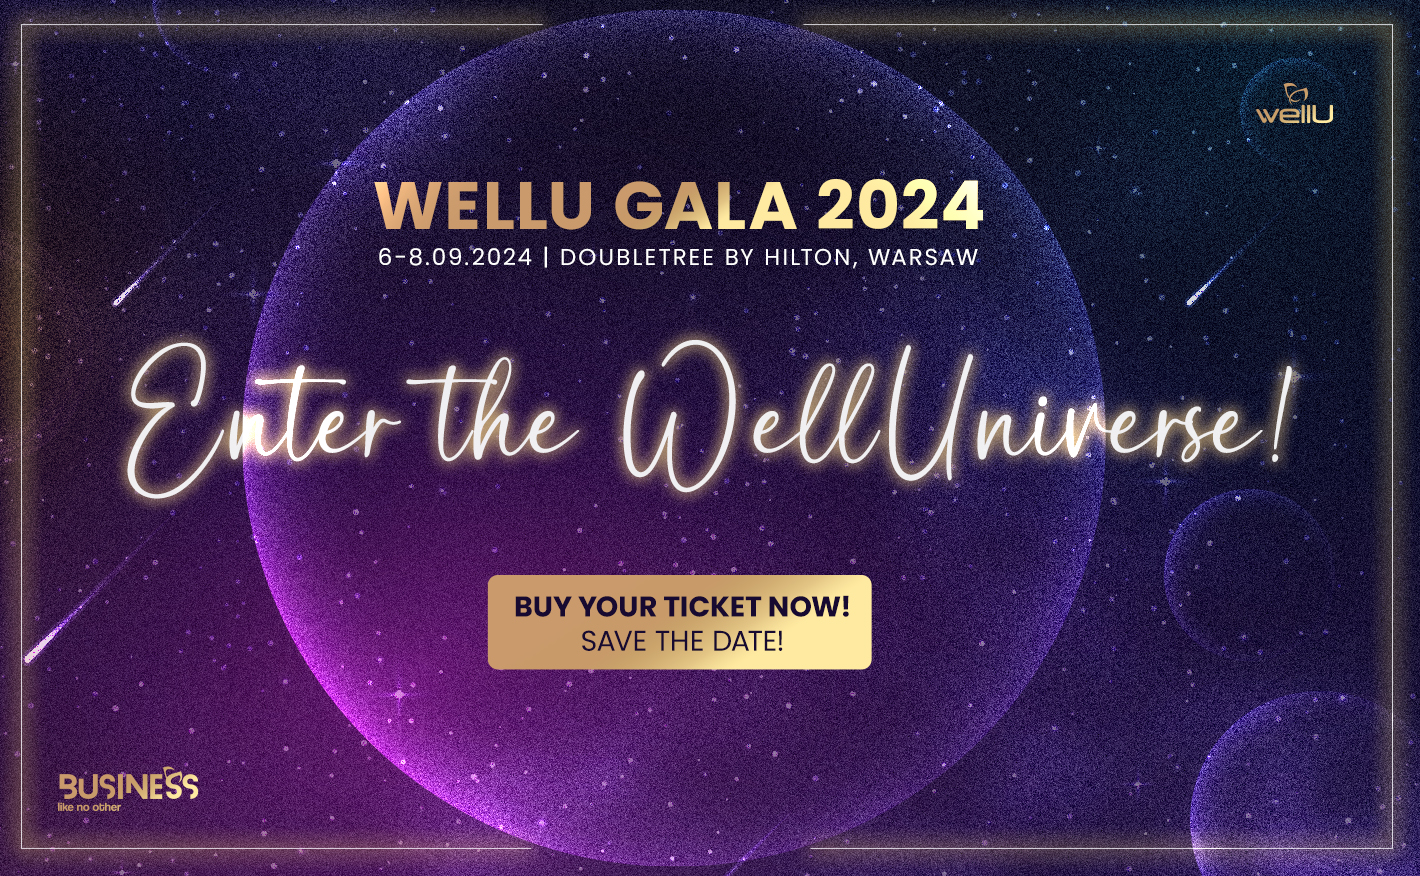 WellU Gála 2024 Varsó. Enter the WellUniverse!